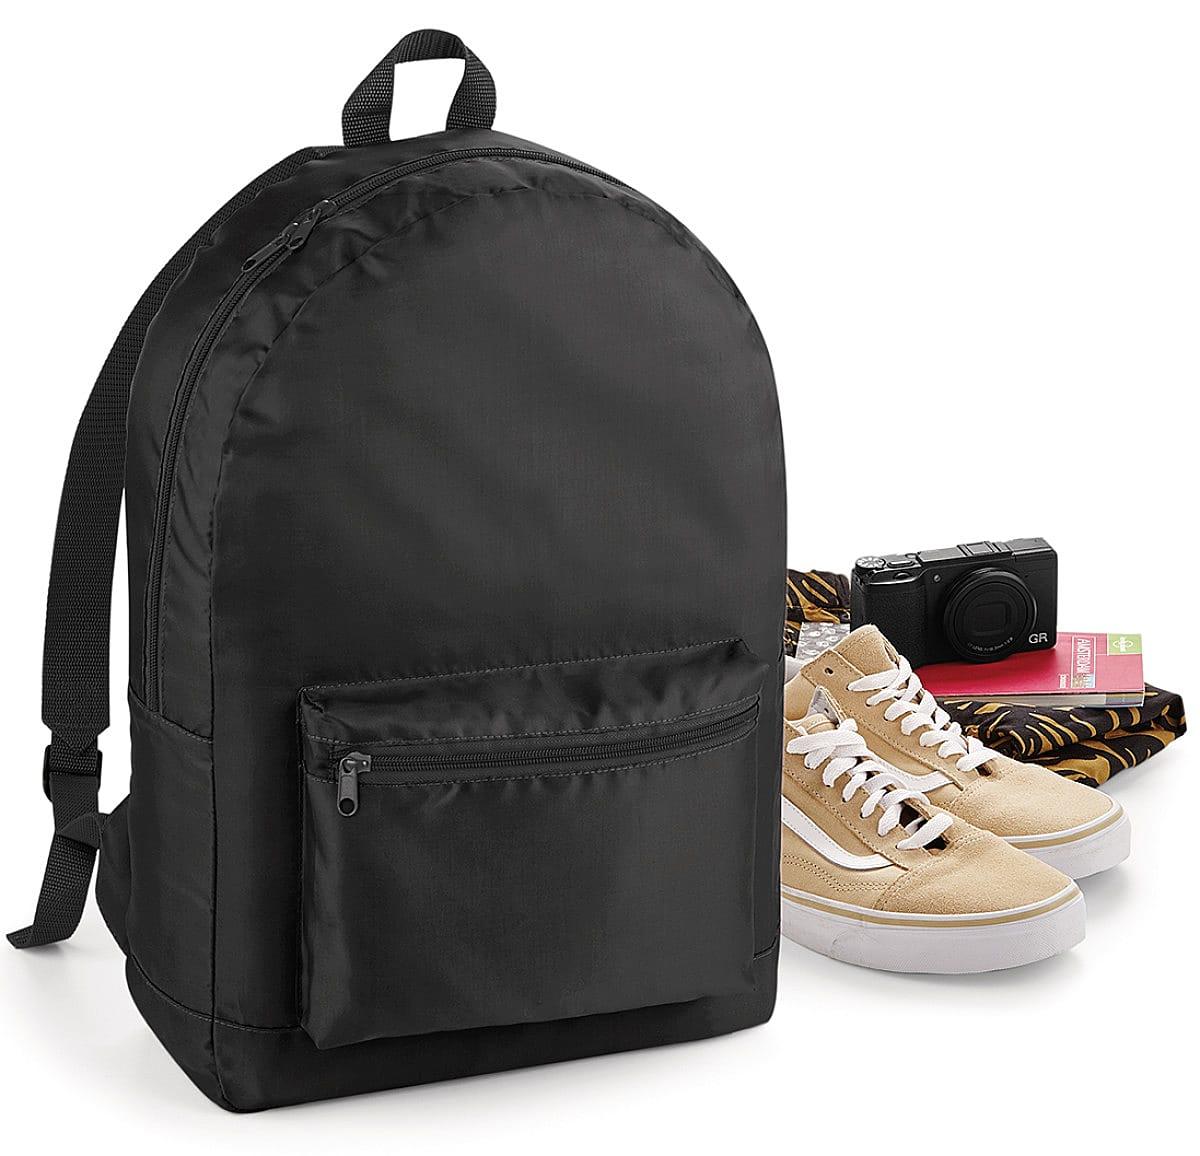 Bagbase Packaway Backpack in Black (Product Code: BG151)